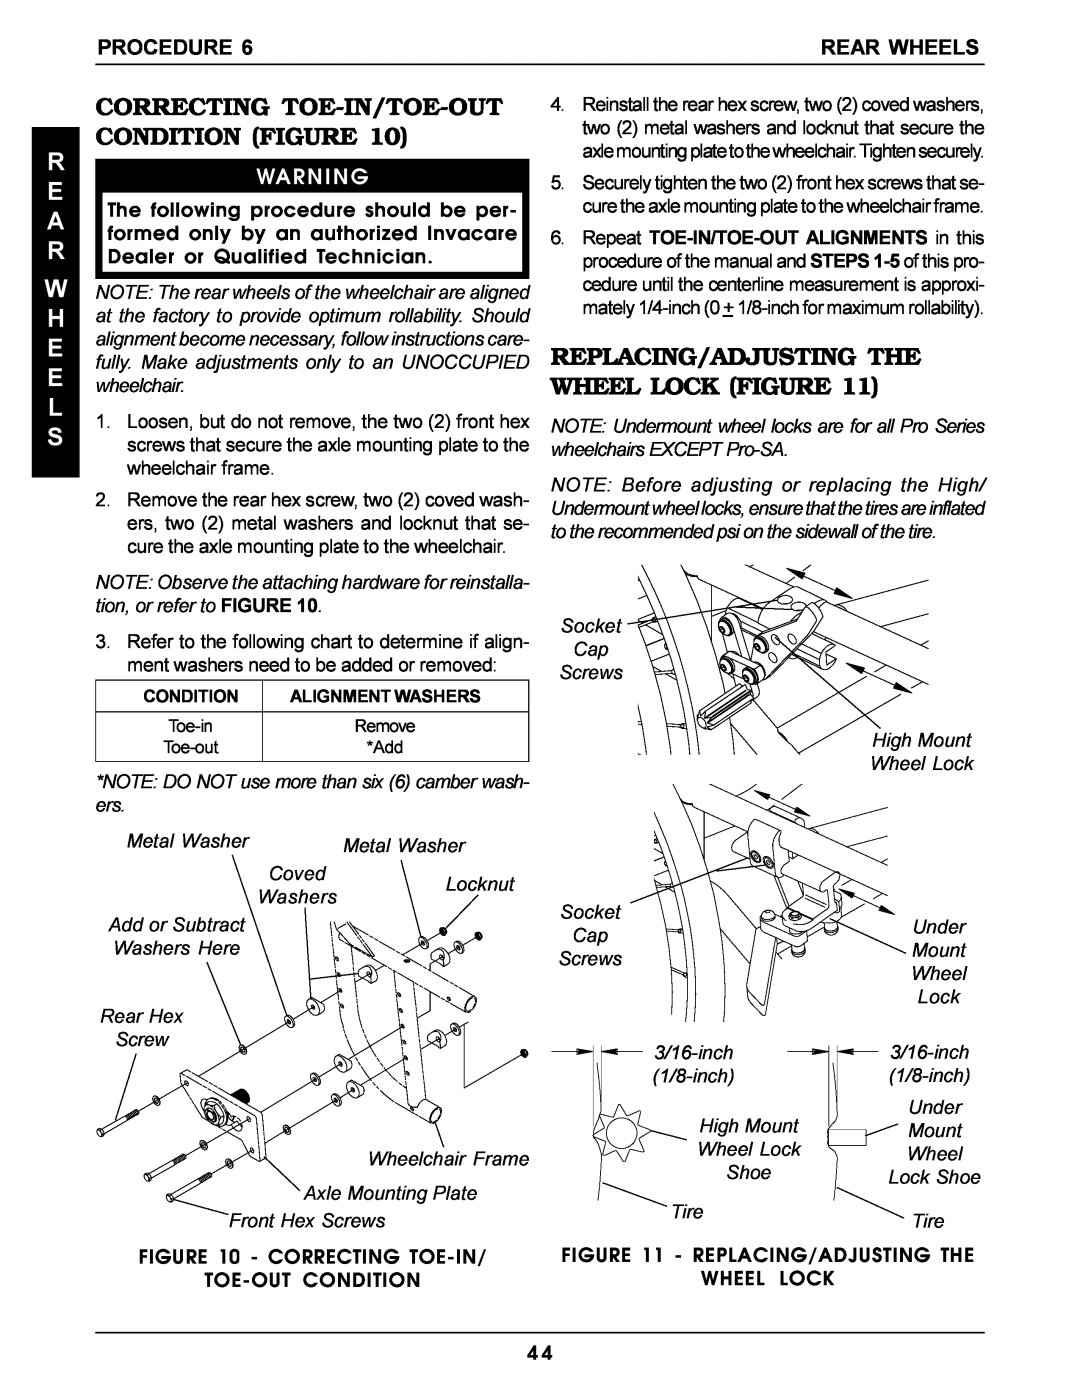 Invacare Pro Series manual Correcting Toe-In/Toe-Out, Condition Figure, E A R W H E E L S, Procedure, Rear Wheels 